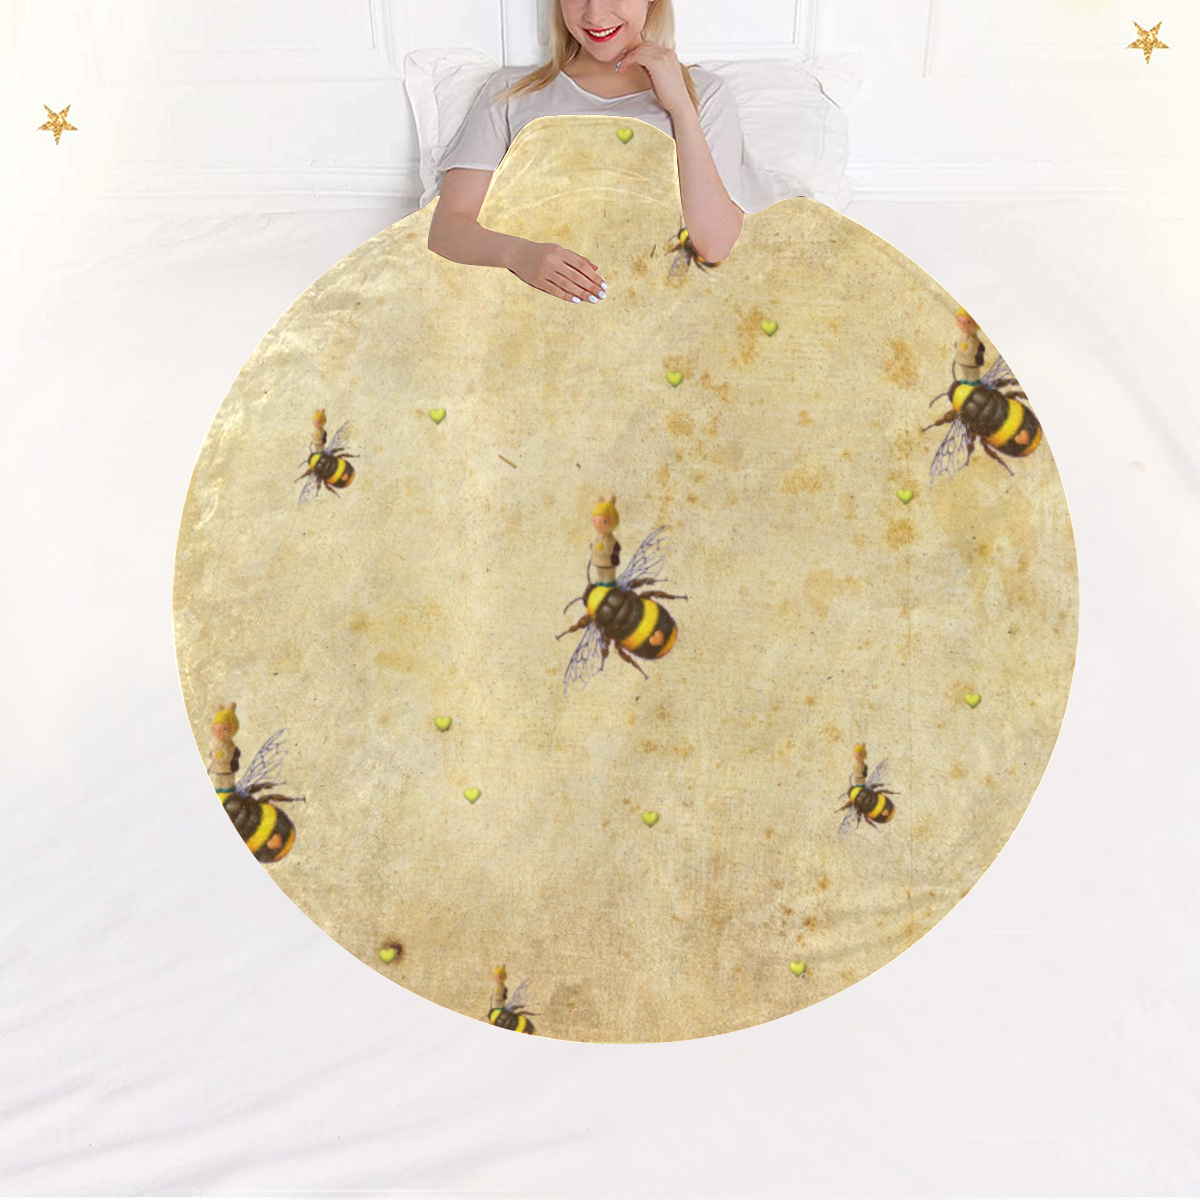 Daisy's Bees Circular Ultra-Soft Micro Fleece Blanket 60"